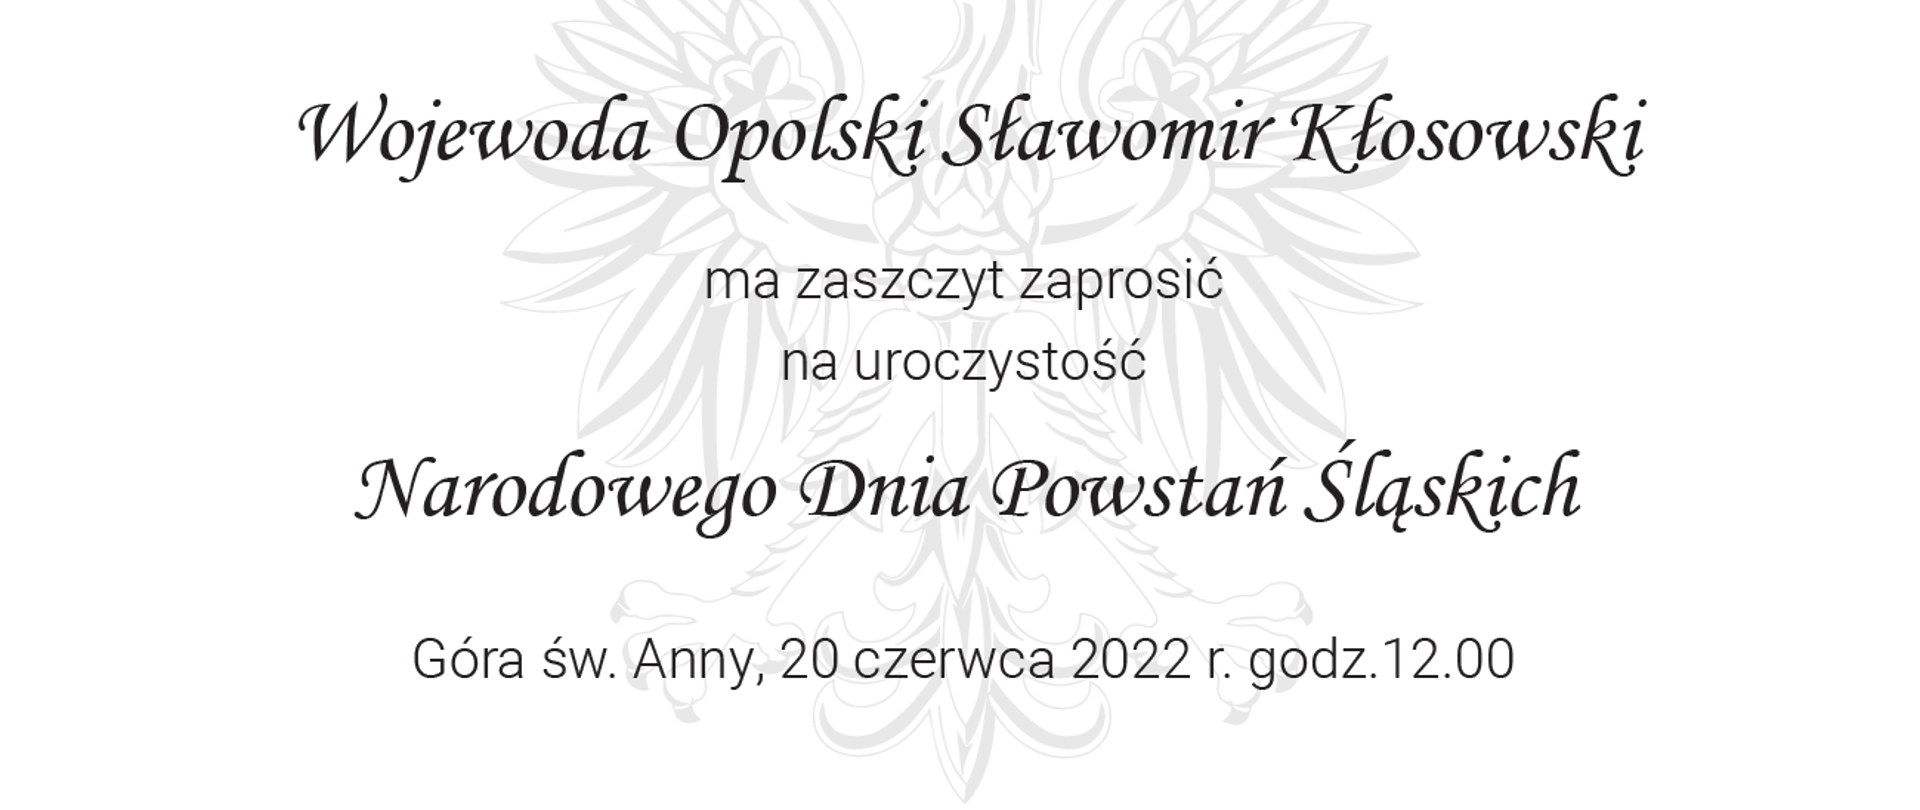 Zaproszenie na Narodowy Dzień Powstań Śląskich, Góra św. Anny, 20 czerwca 2022, o godzinie 12.00 